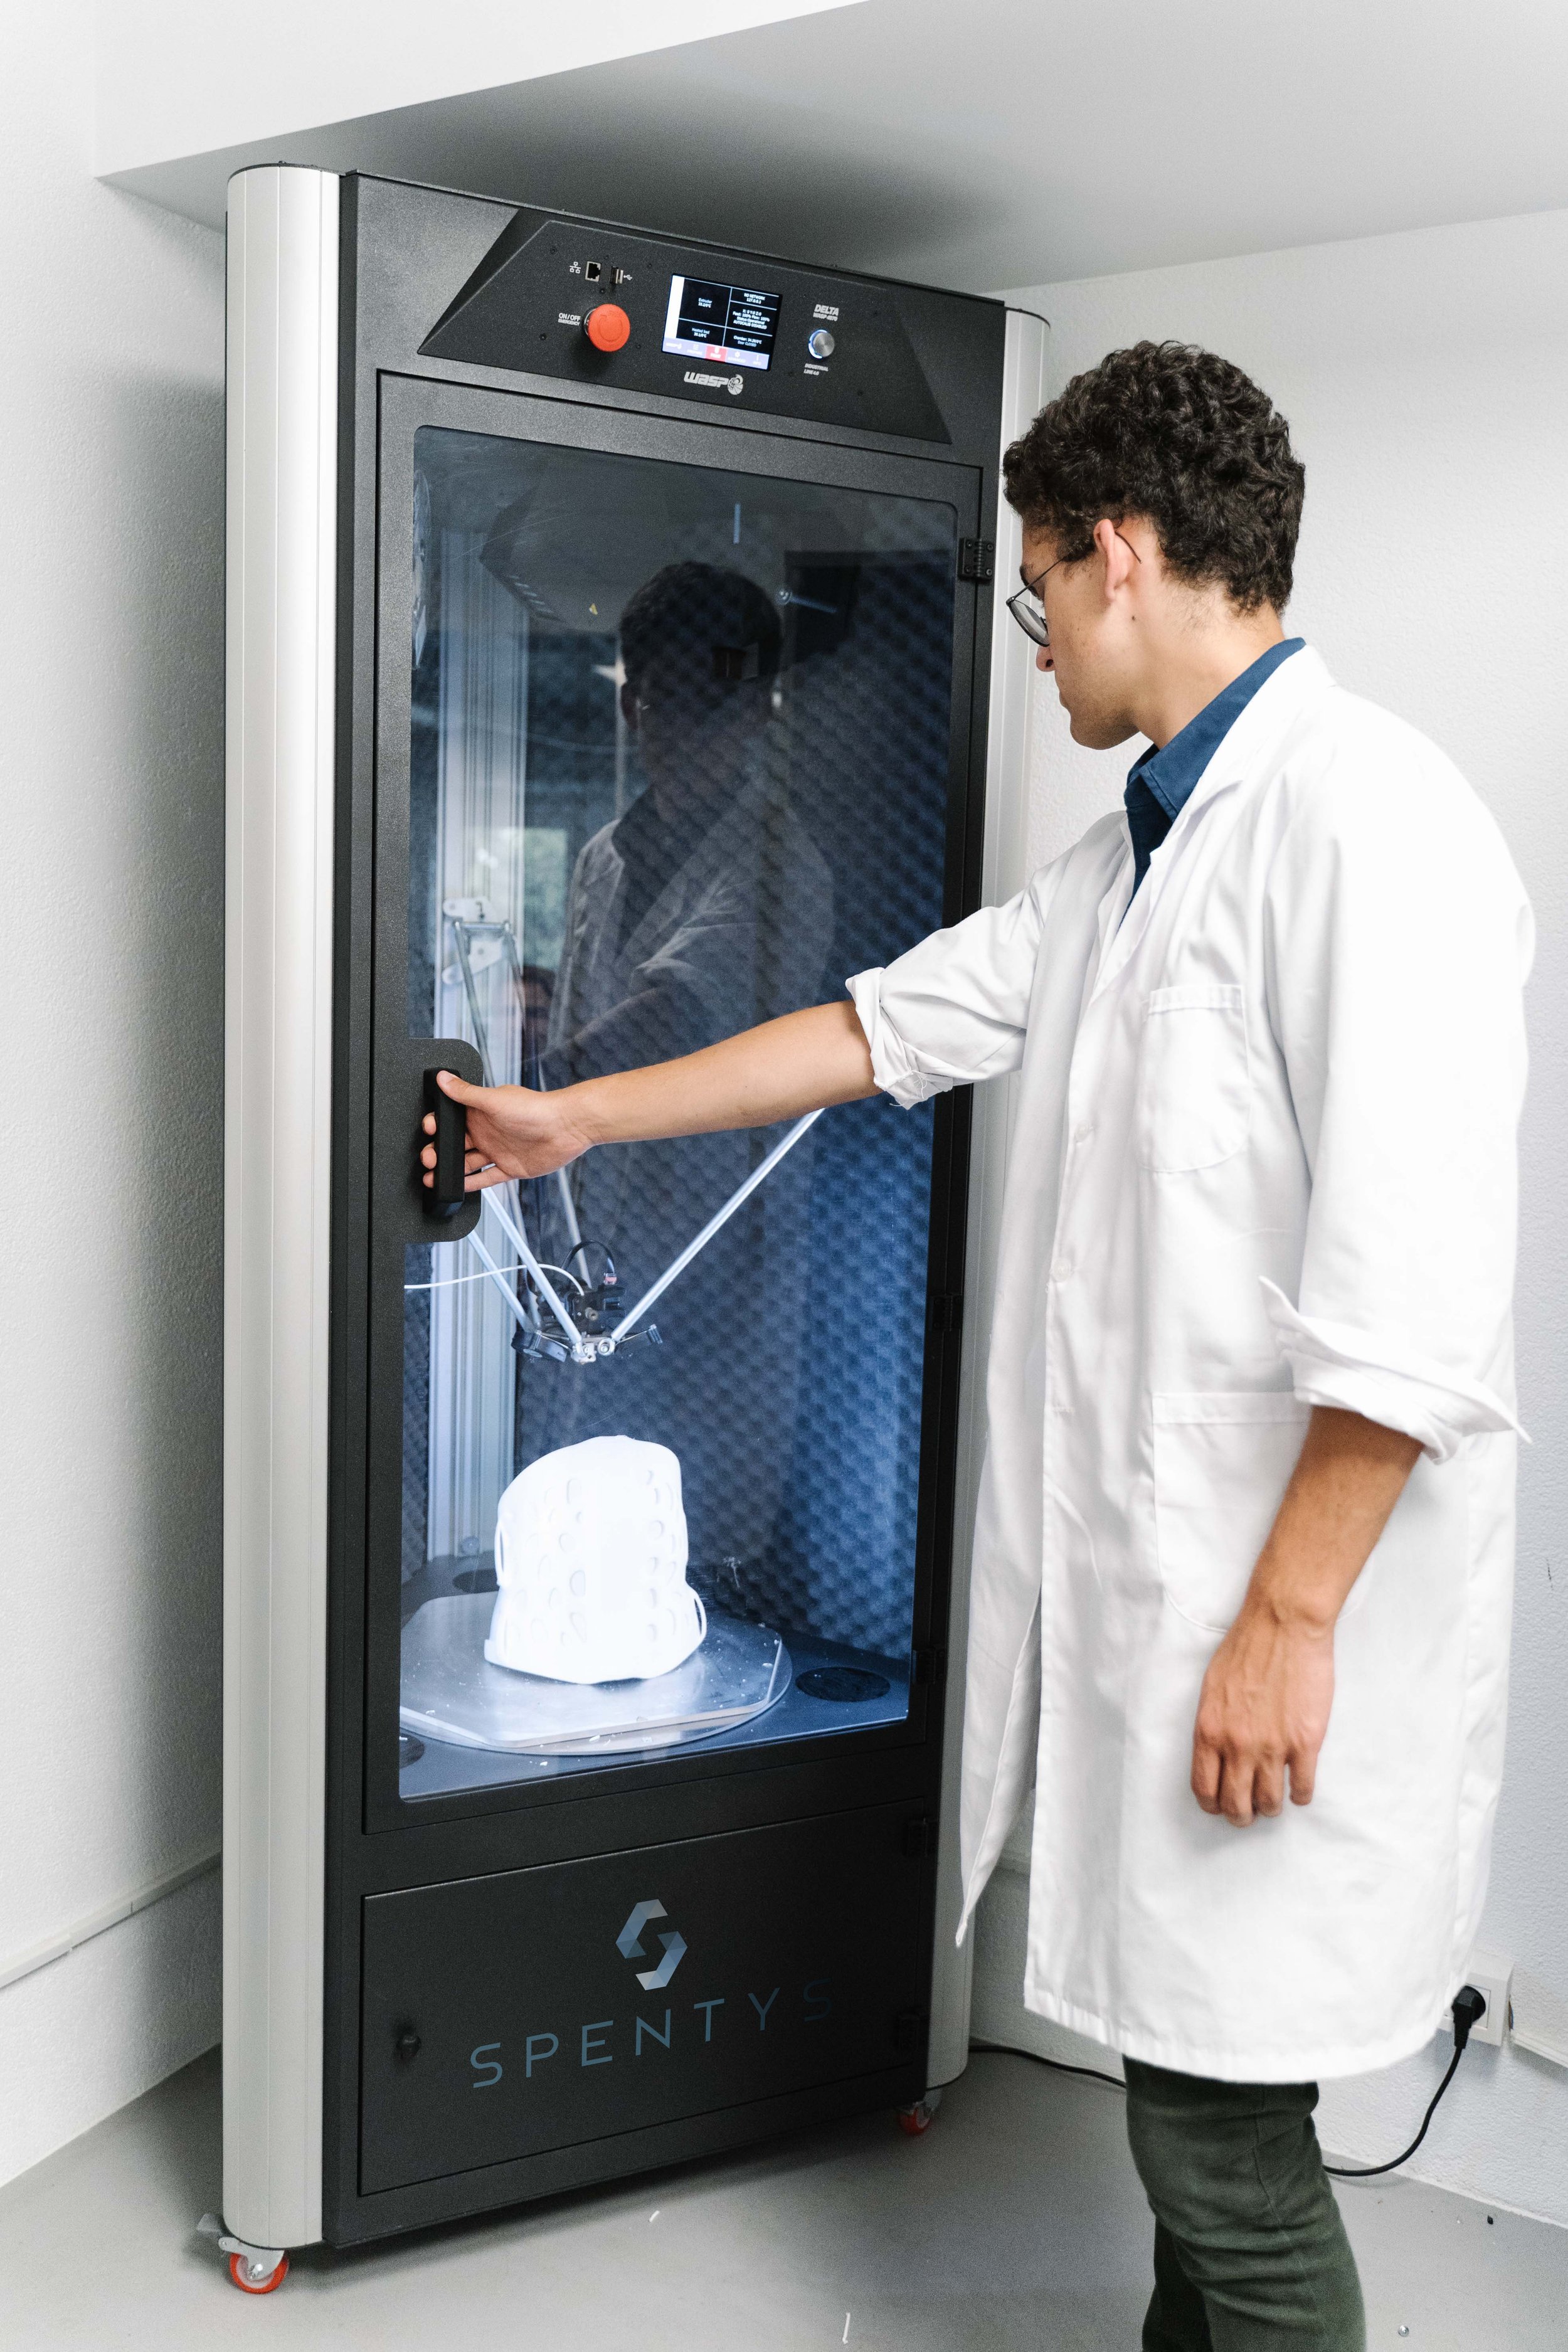 3D printing of custom orthosis